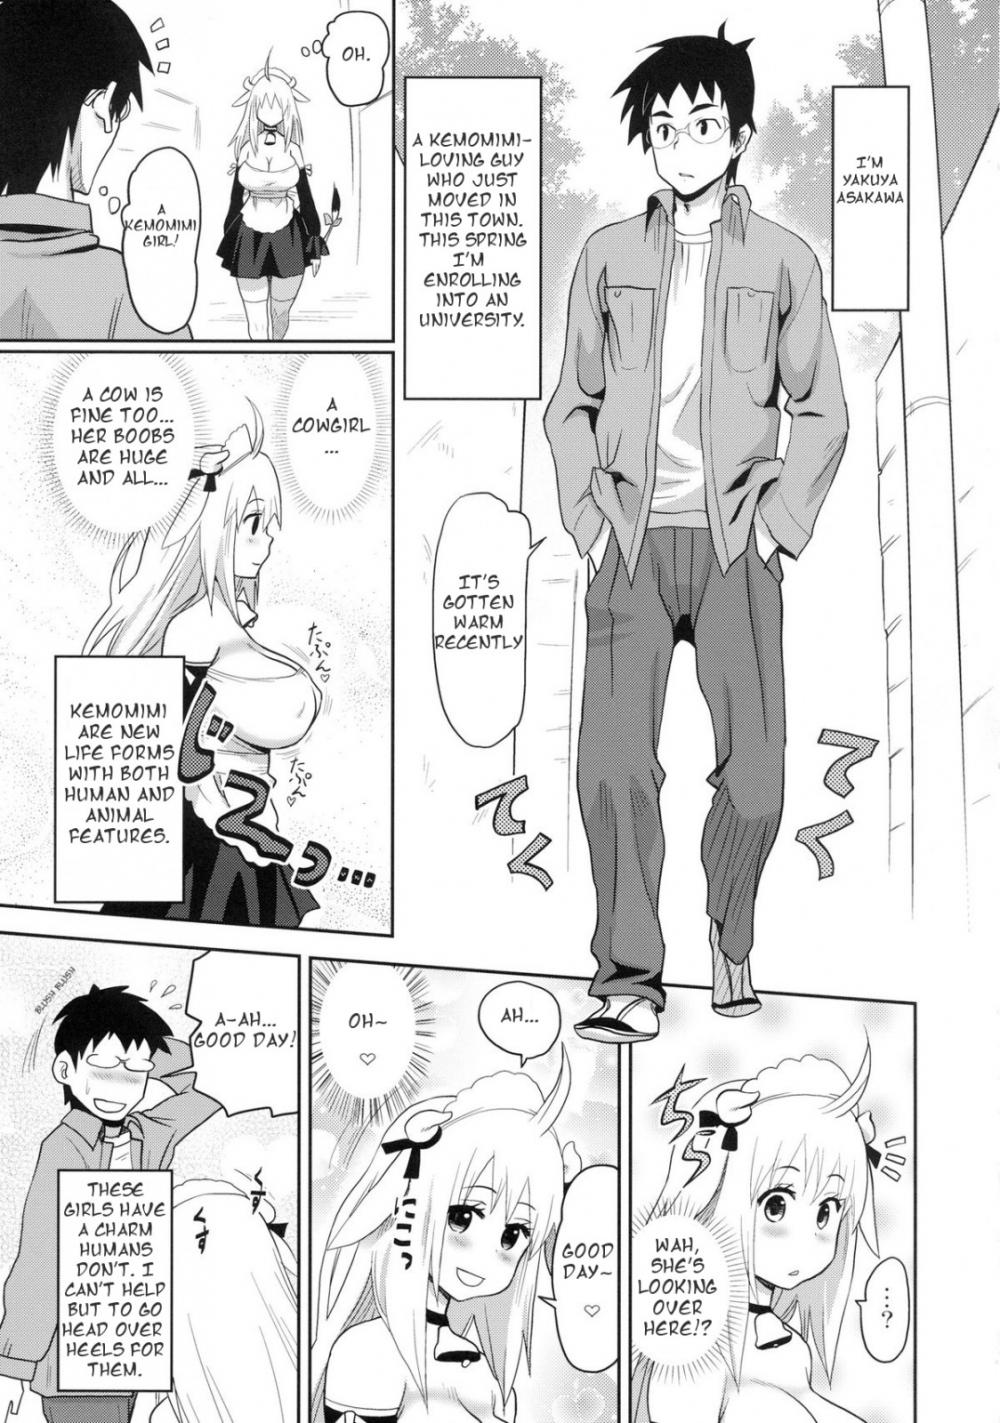 Hentai Manga Comic-Kemomimi! 5 ~Tanuki Musume Toujou Hen~-Read-2